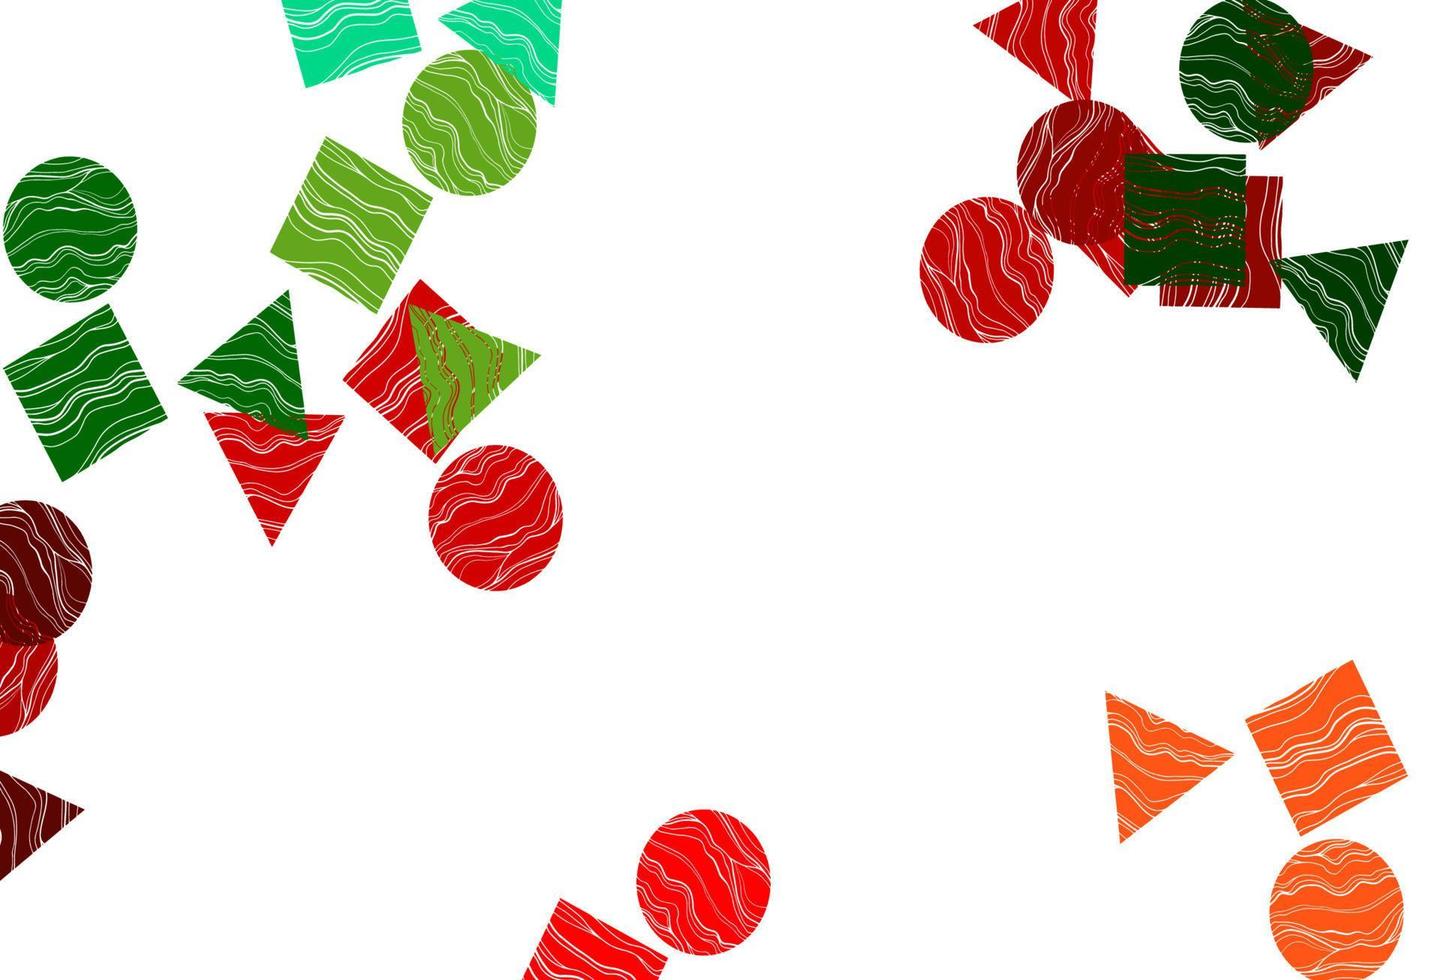 copertina vettoriale verde chiaro, rosso in stile poligonale con cerchi.